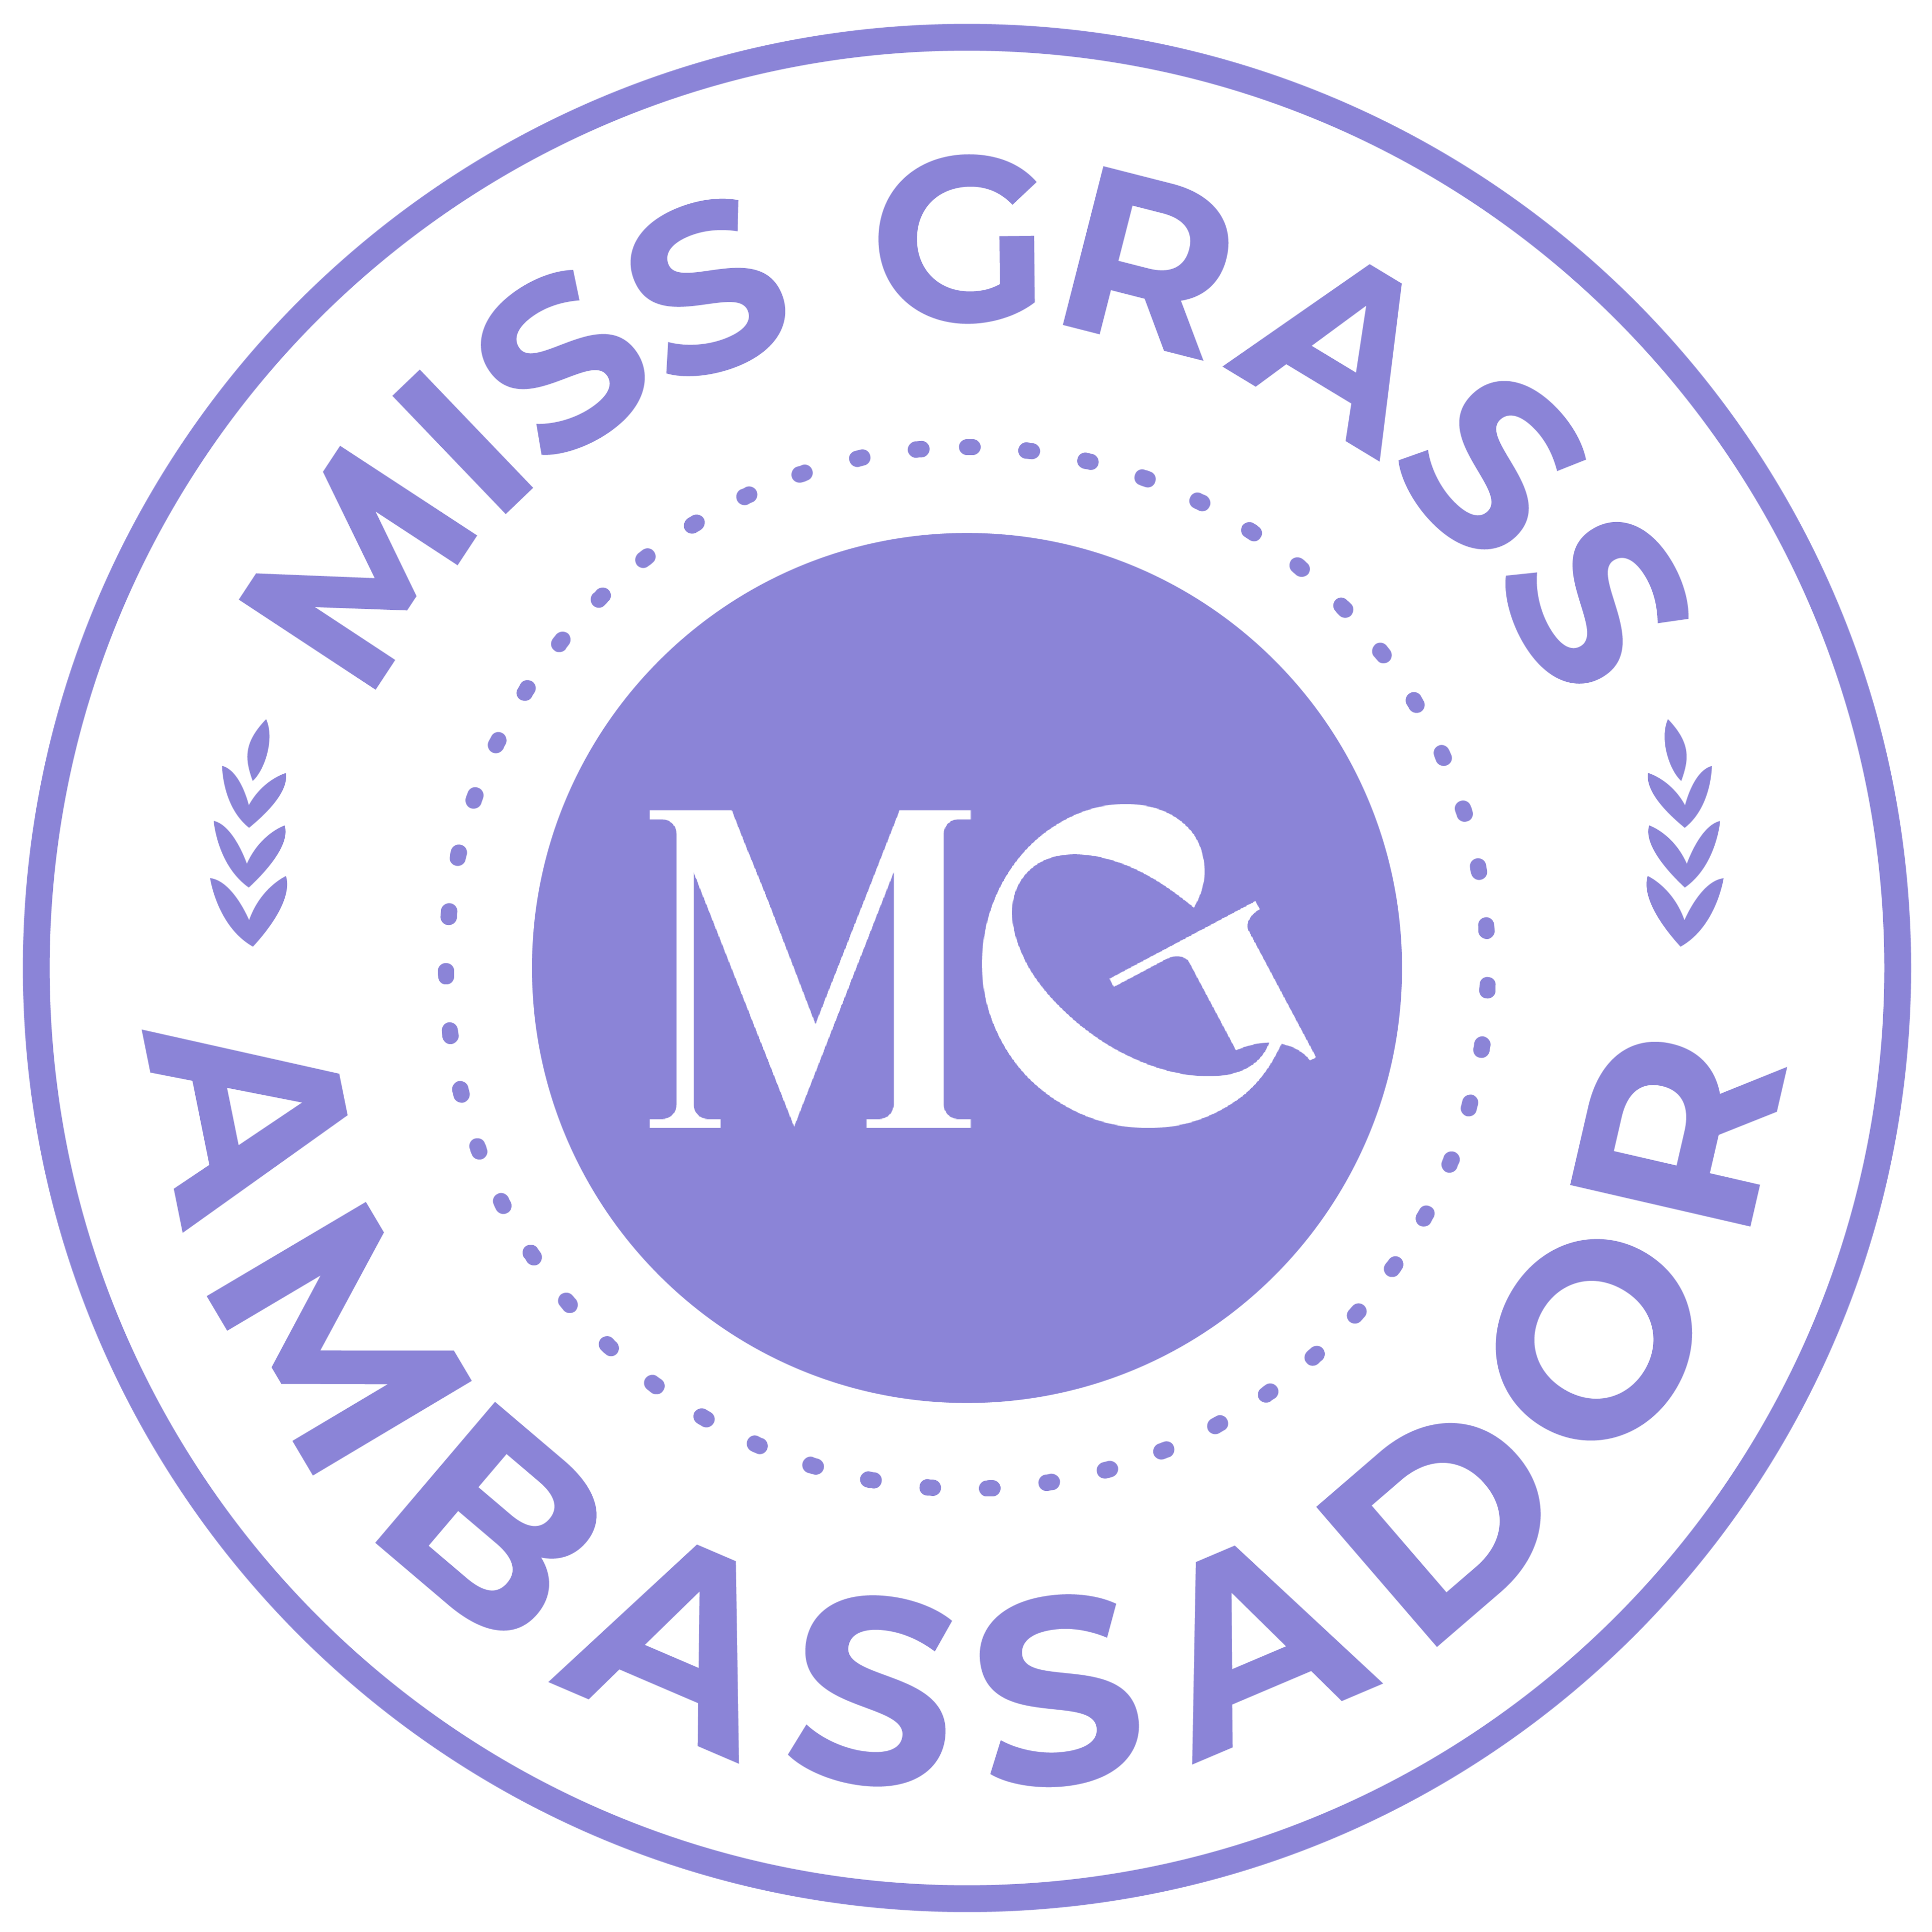 MISS GRASS AMBASSADOR